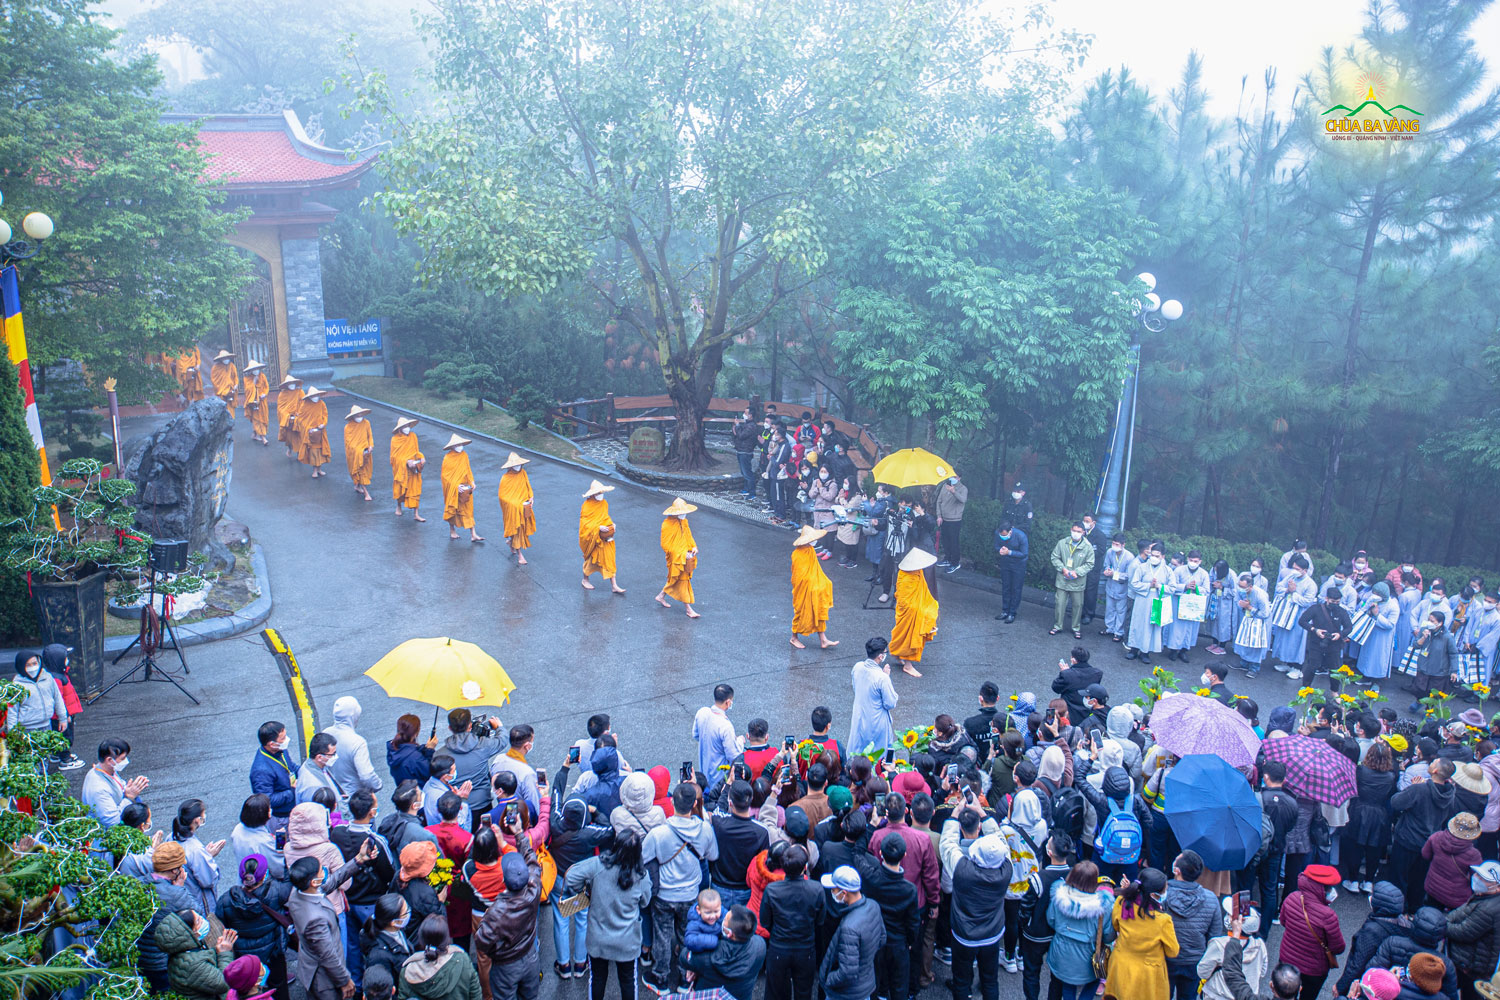 Hình ảnh Tăng đoàn chùa Ba Vàng đội nón, đeo bình bát đi khất thực trong tiết trời mưa xuân